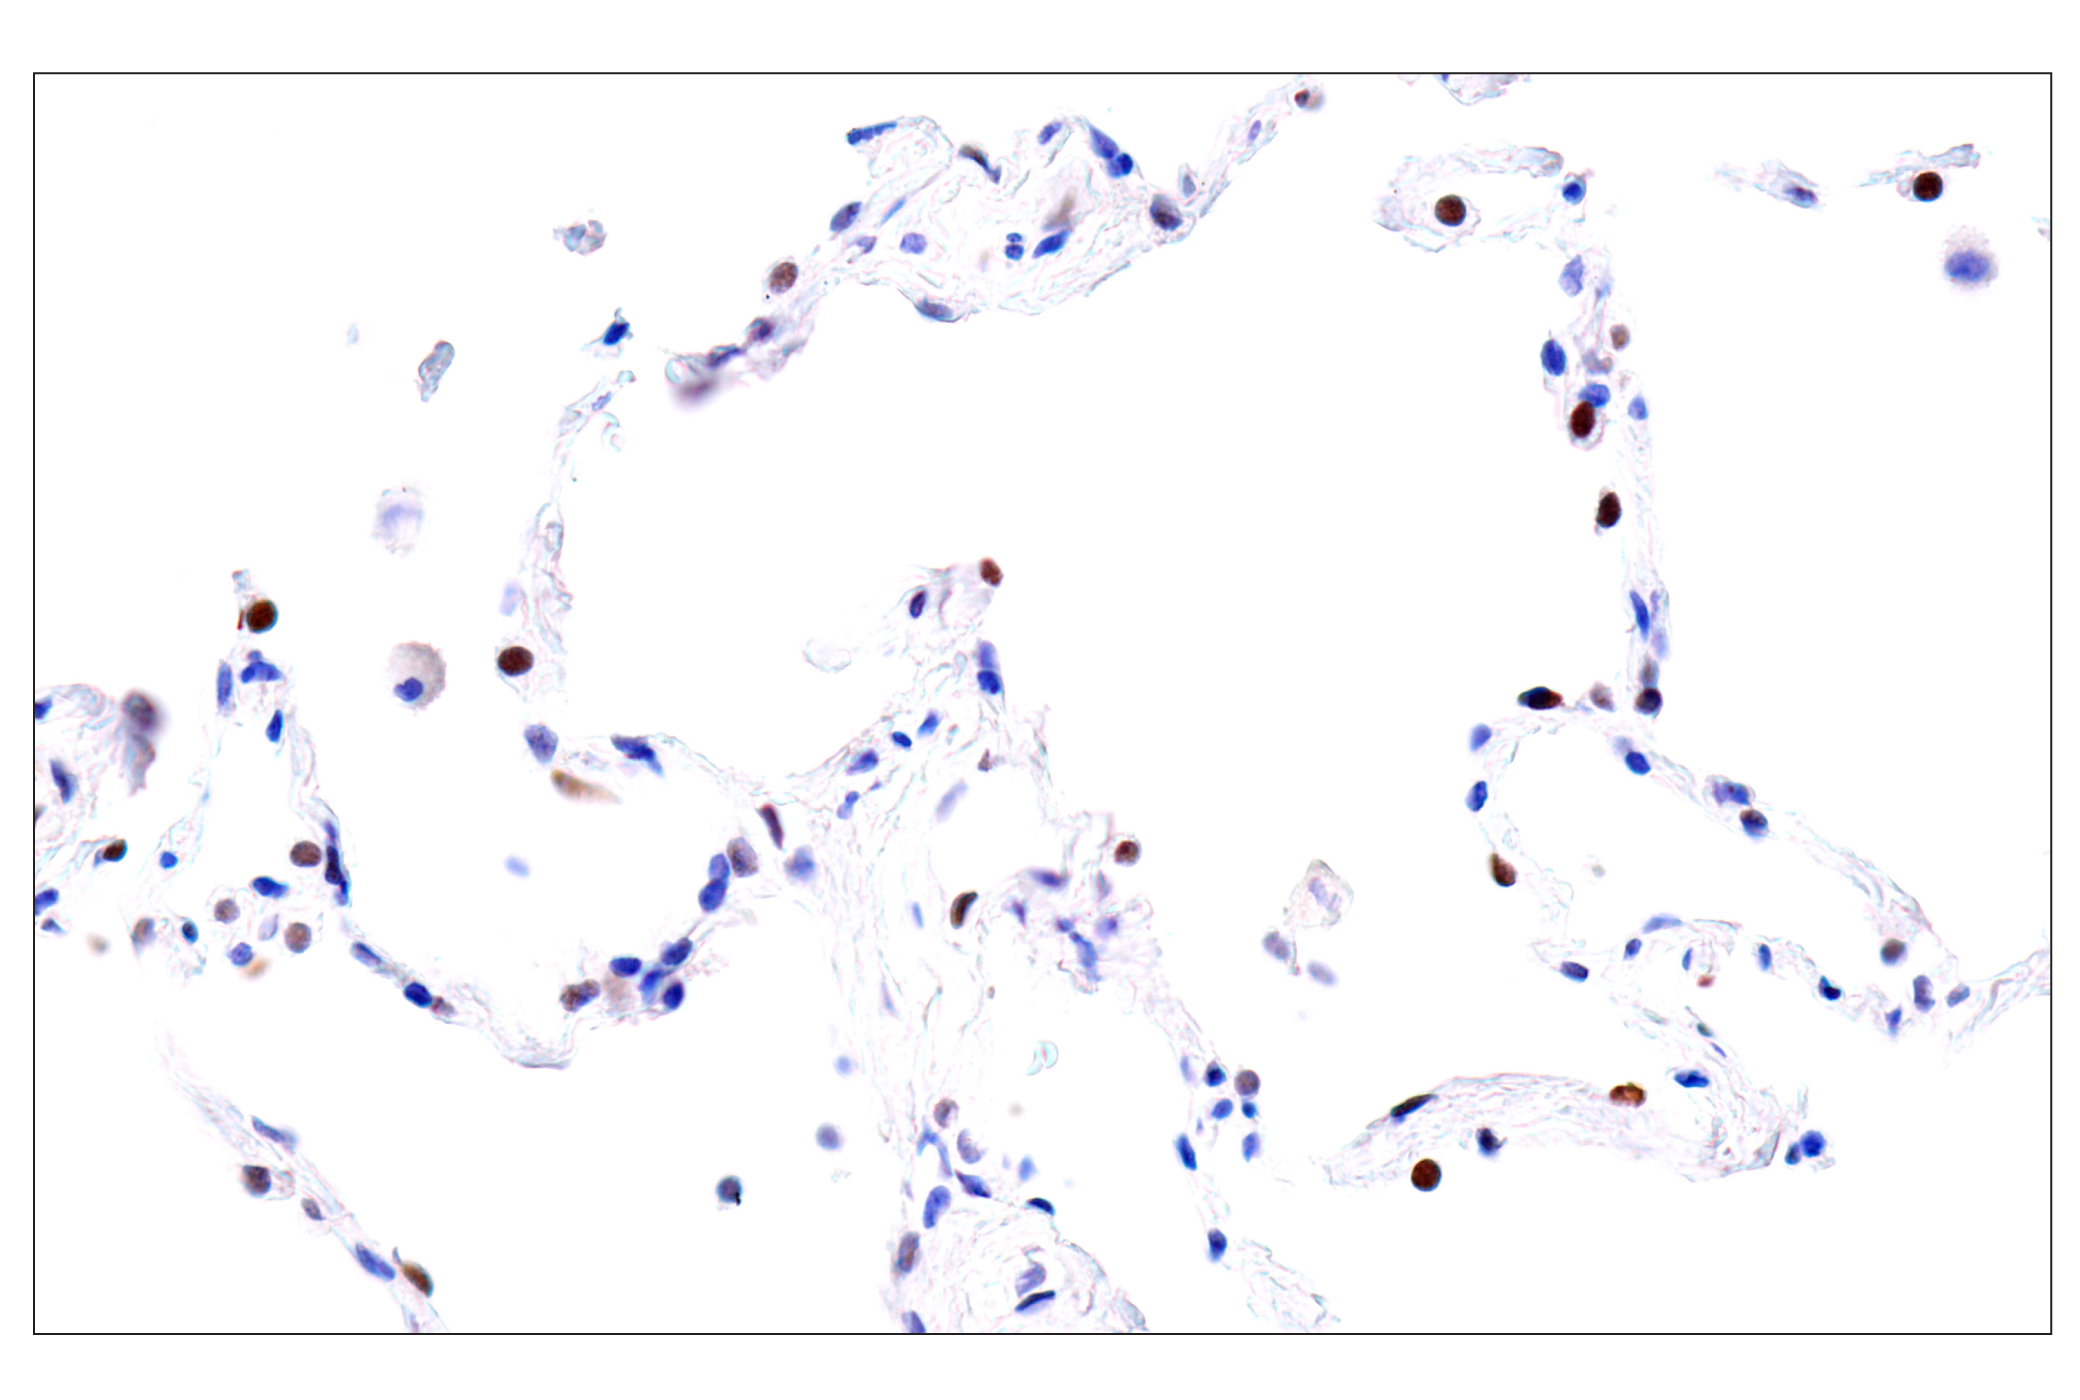  Image 52: GATA Transcription Factor Antibody Sampler Kit